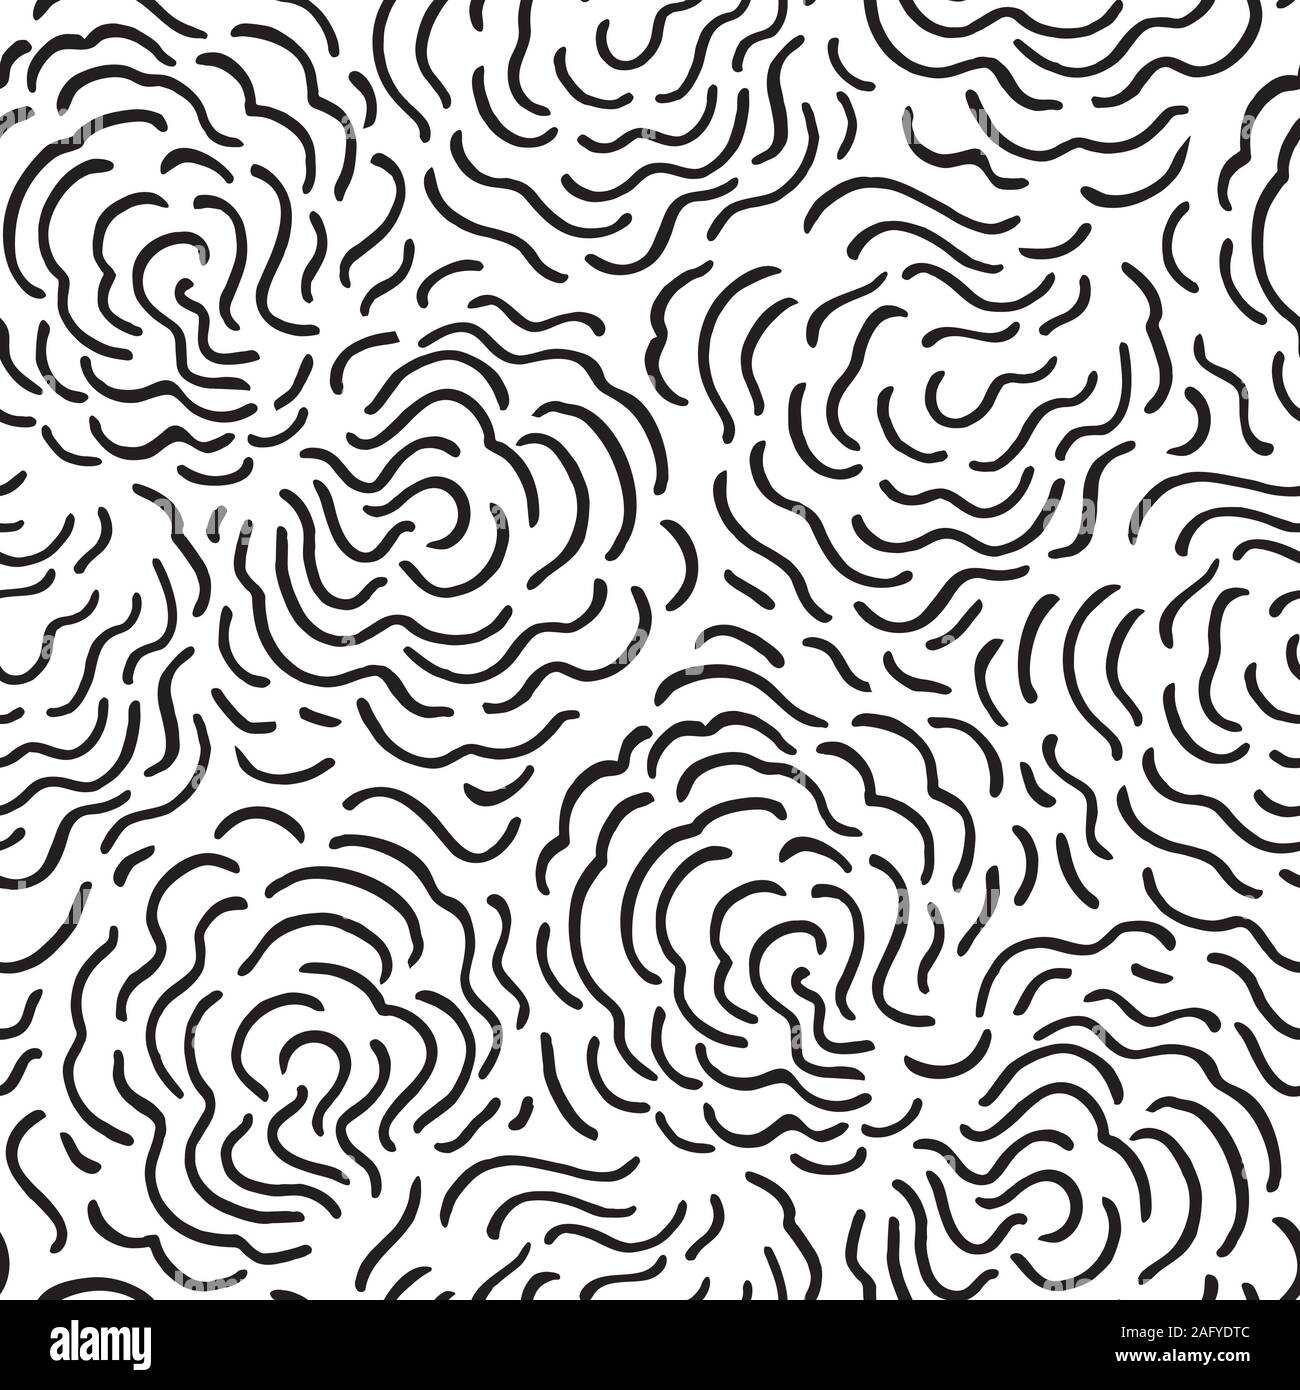 Nahtlose abstrakte Hand gezeichnet cloud Muster mit handbemalten unregelmäßige schwarze Linie kunst Swirl in wellenförmigen Bewegung. Grafik- und modernes Design für Scrapbooking, stationär, Mode und Design der Verpackung. Stock Vektor